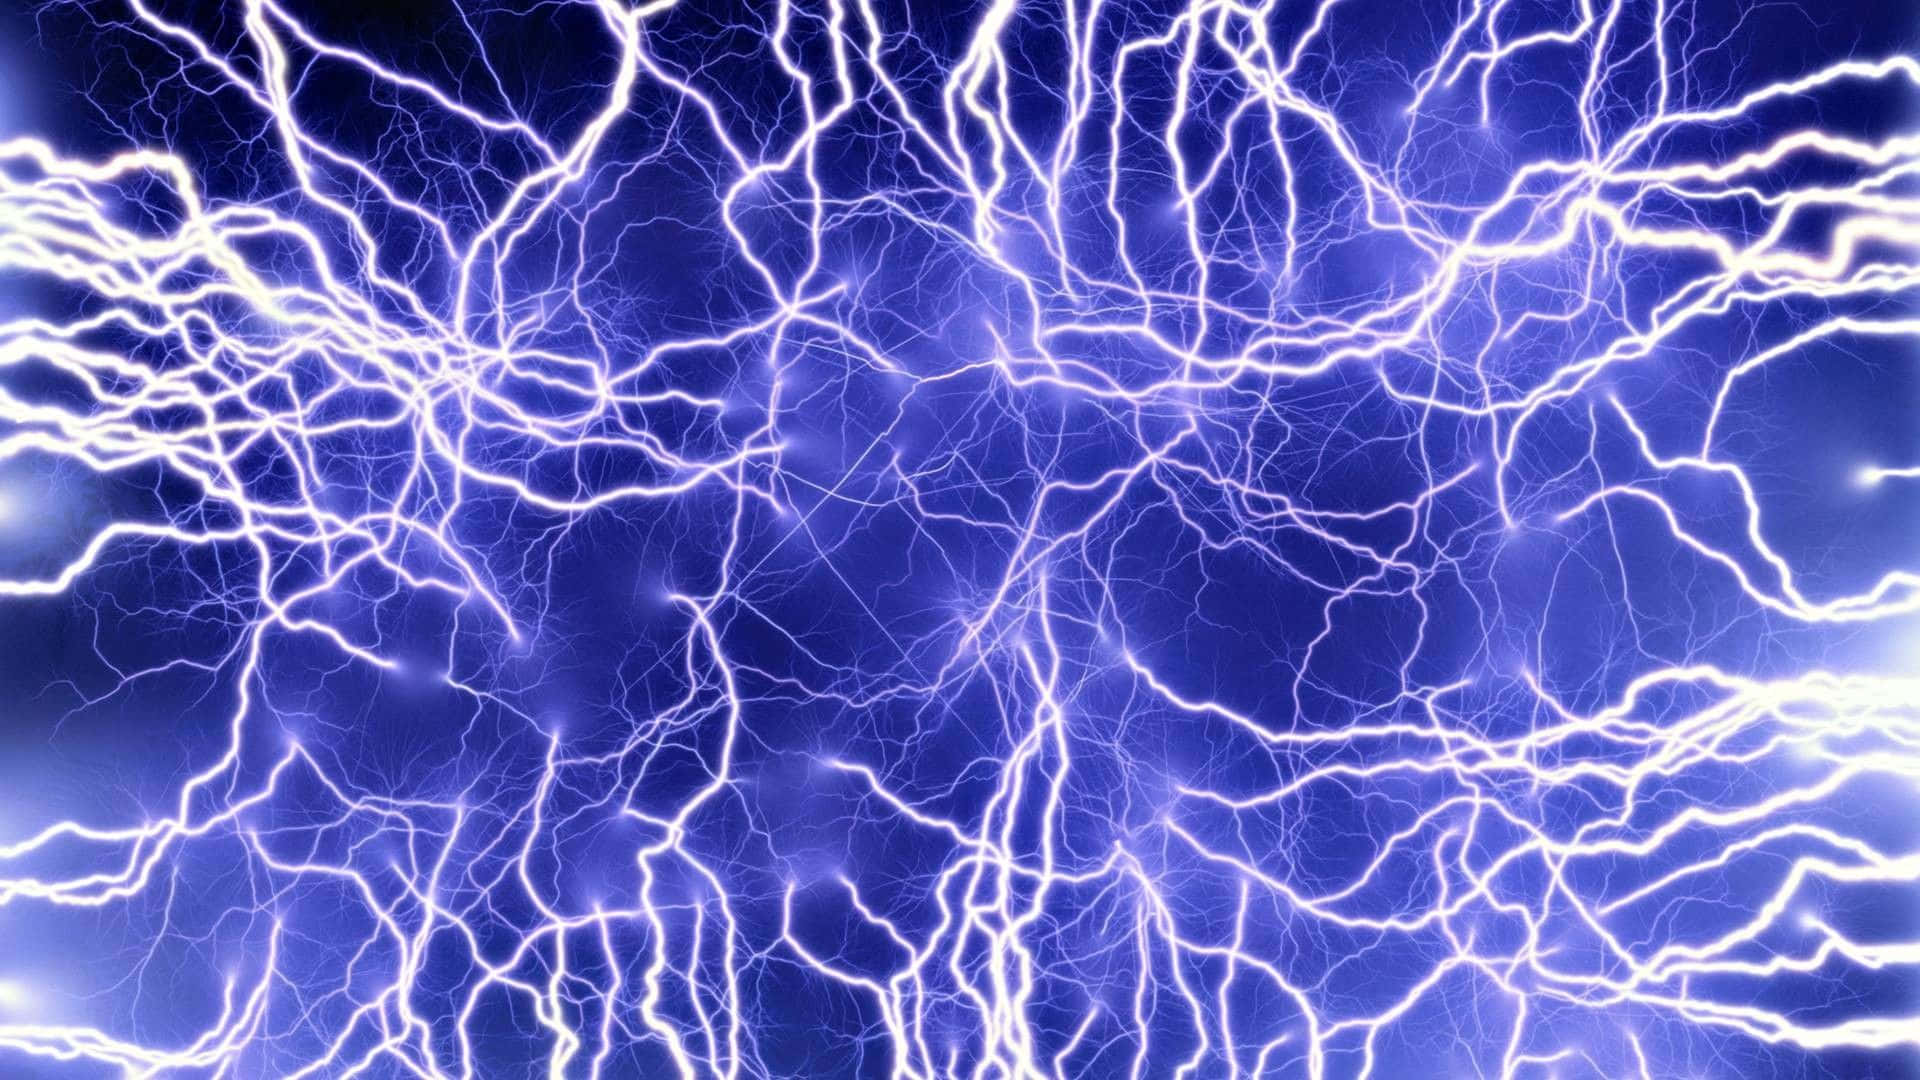 "Energy of the Sky: Blue Lightning Strikes" Wallpaper